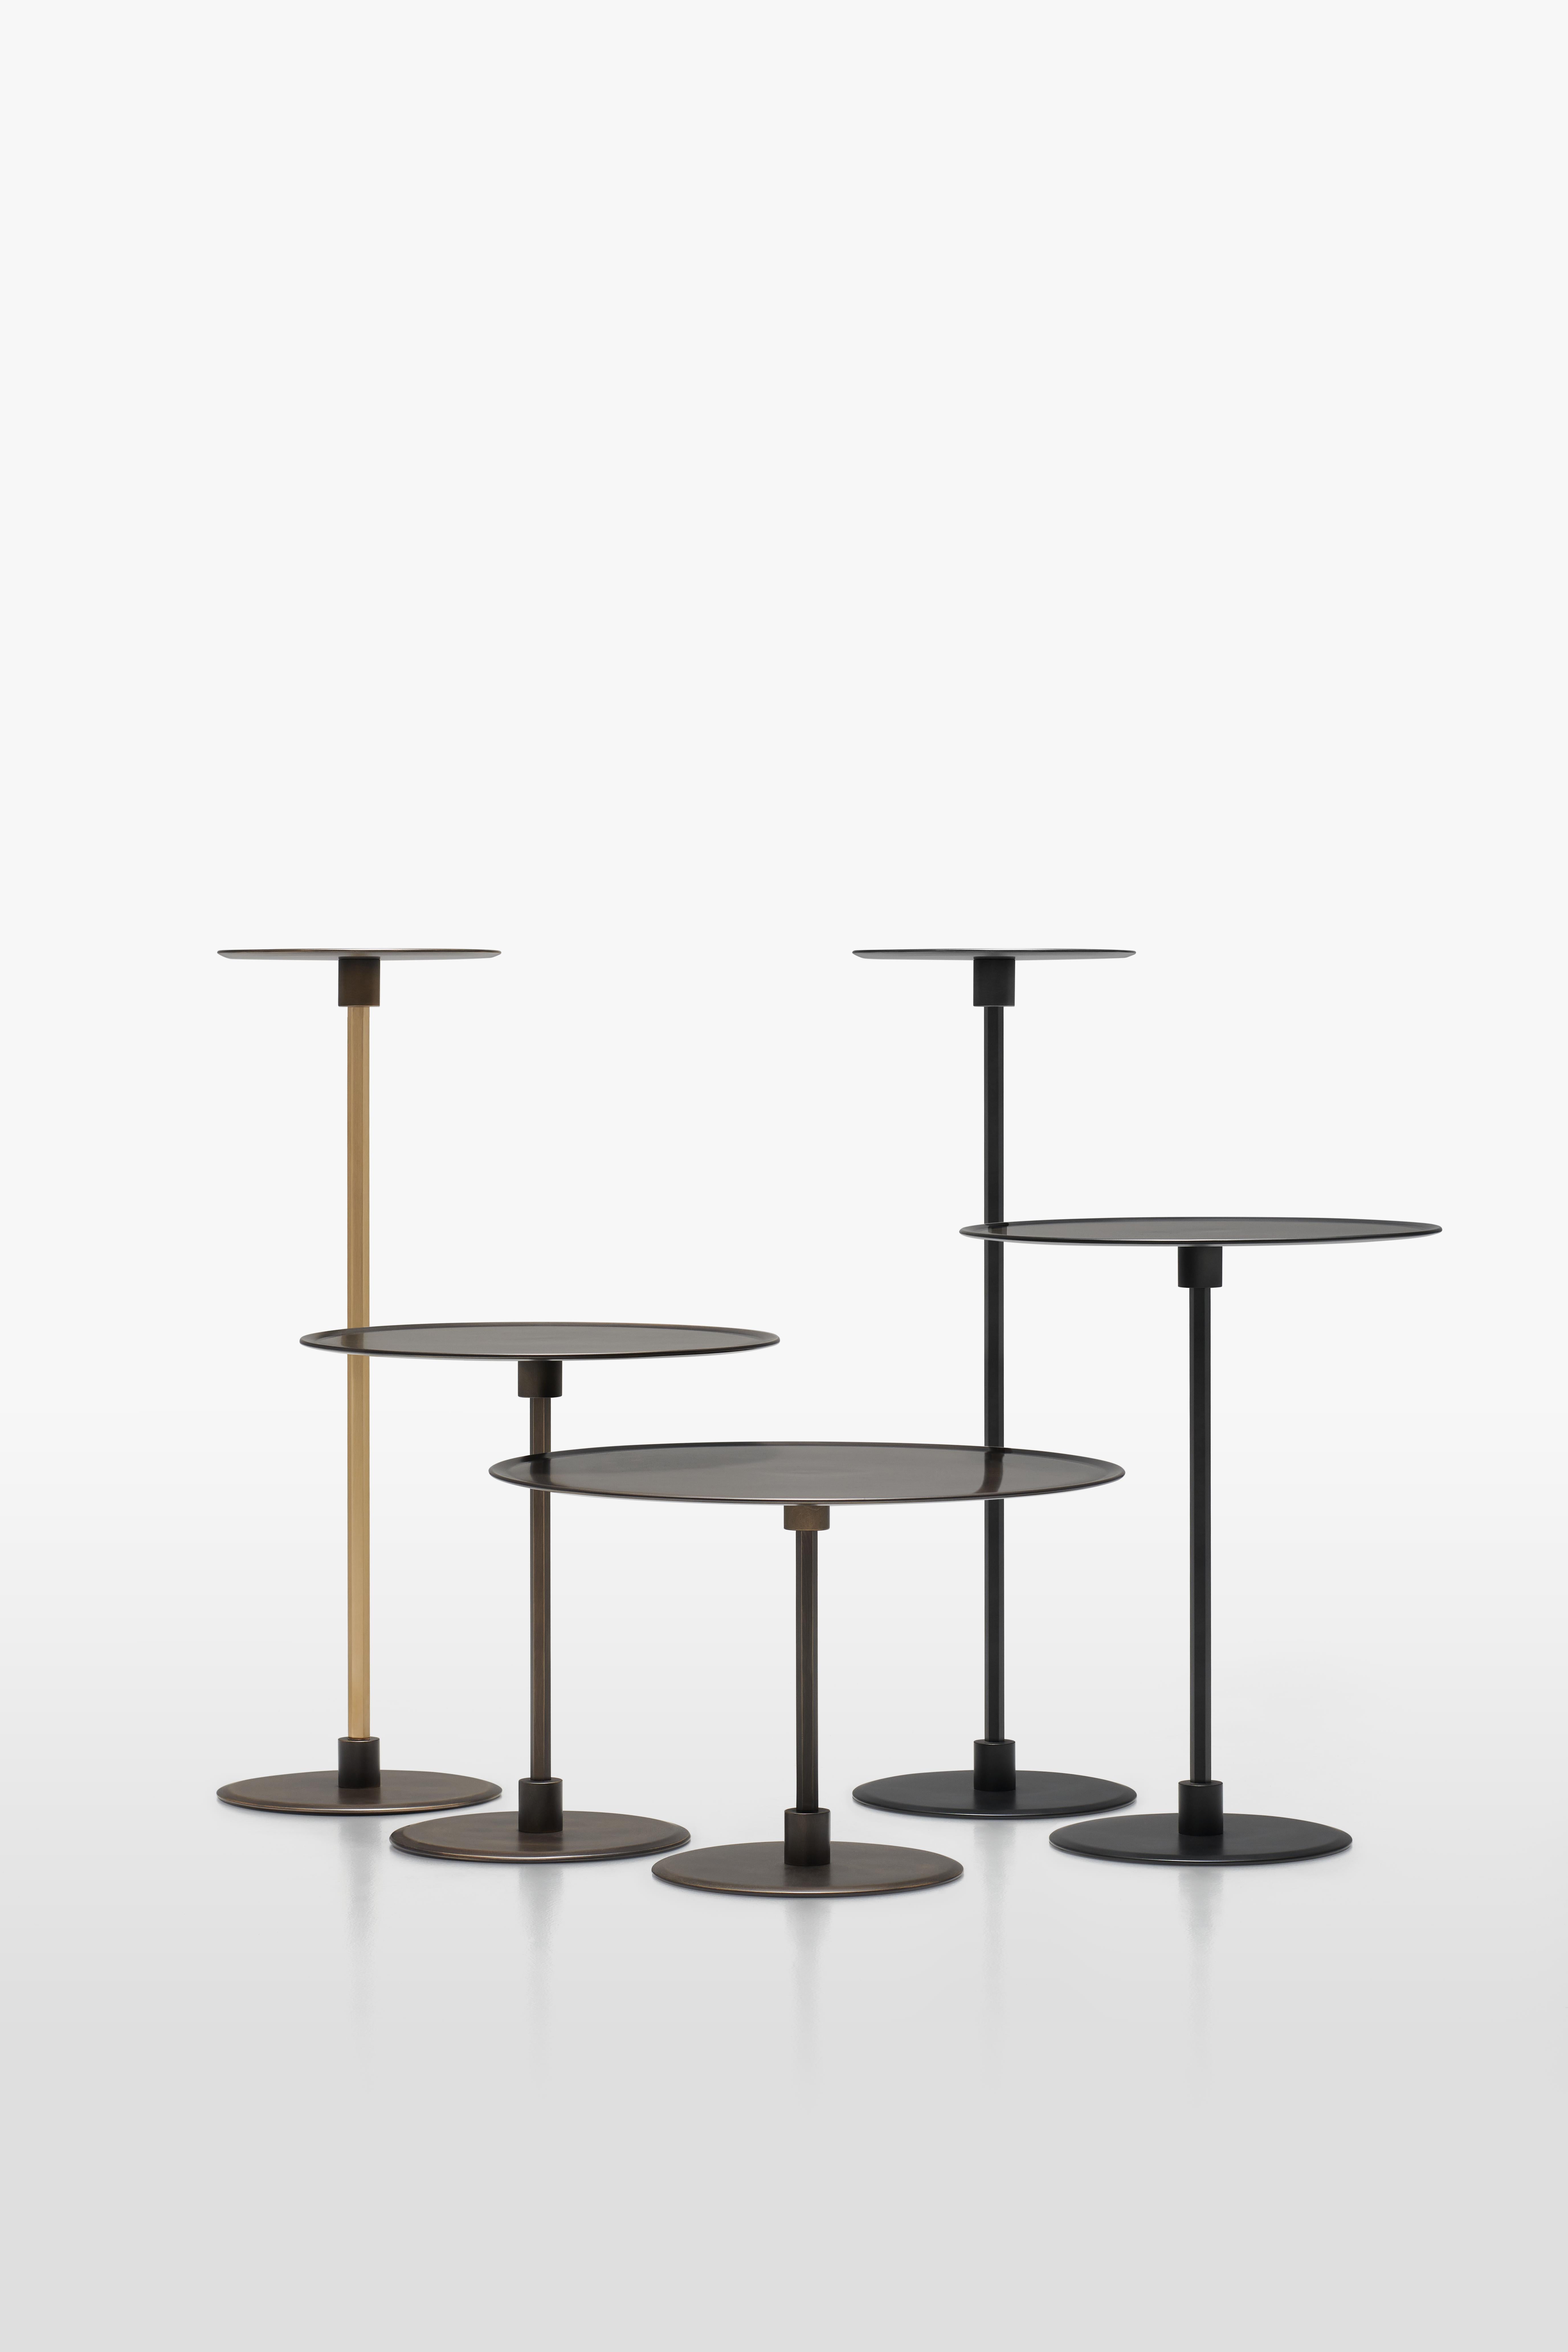 L'architecte Gianfranco Frattini a signé Gong, qui a été dévoilé pour la première fois en 1987.
Gong est une gamme de tables rondes en métal, d'une simplicité formelle et aux lignes épurées, qui sont disponibles en différentes tailles et hauteurs,